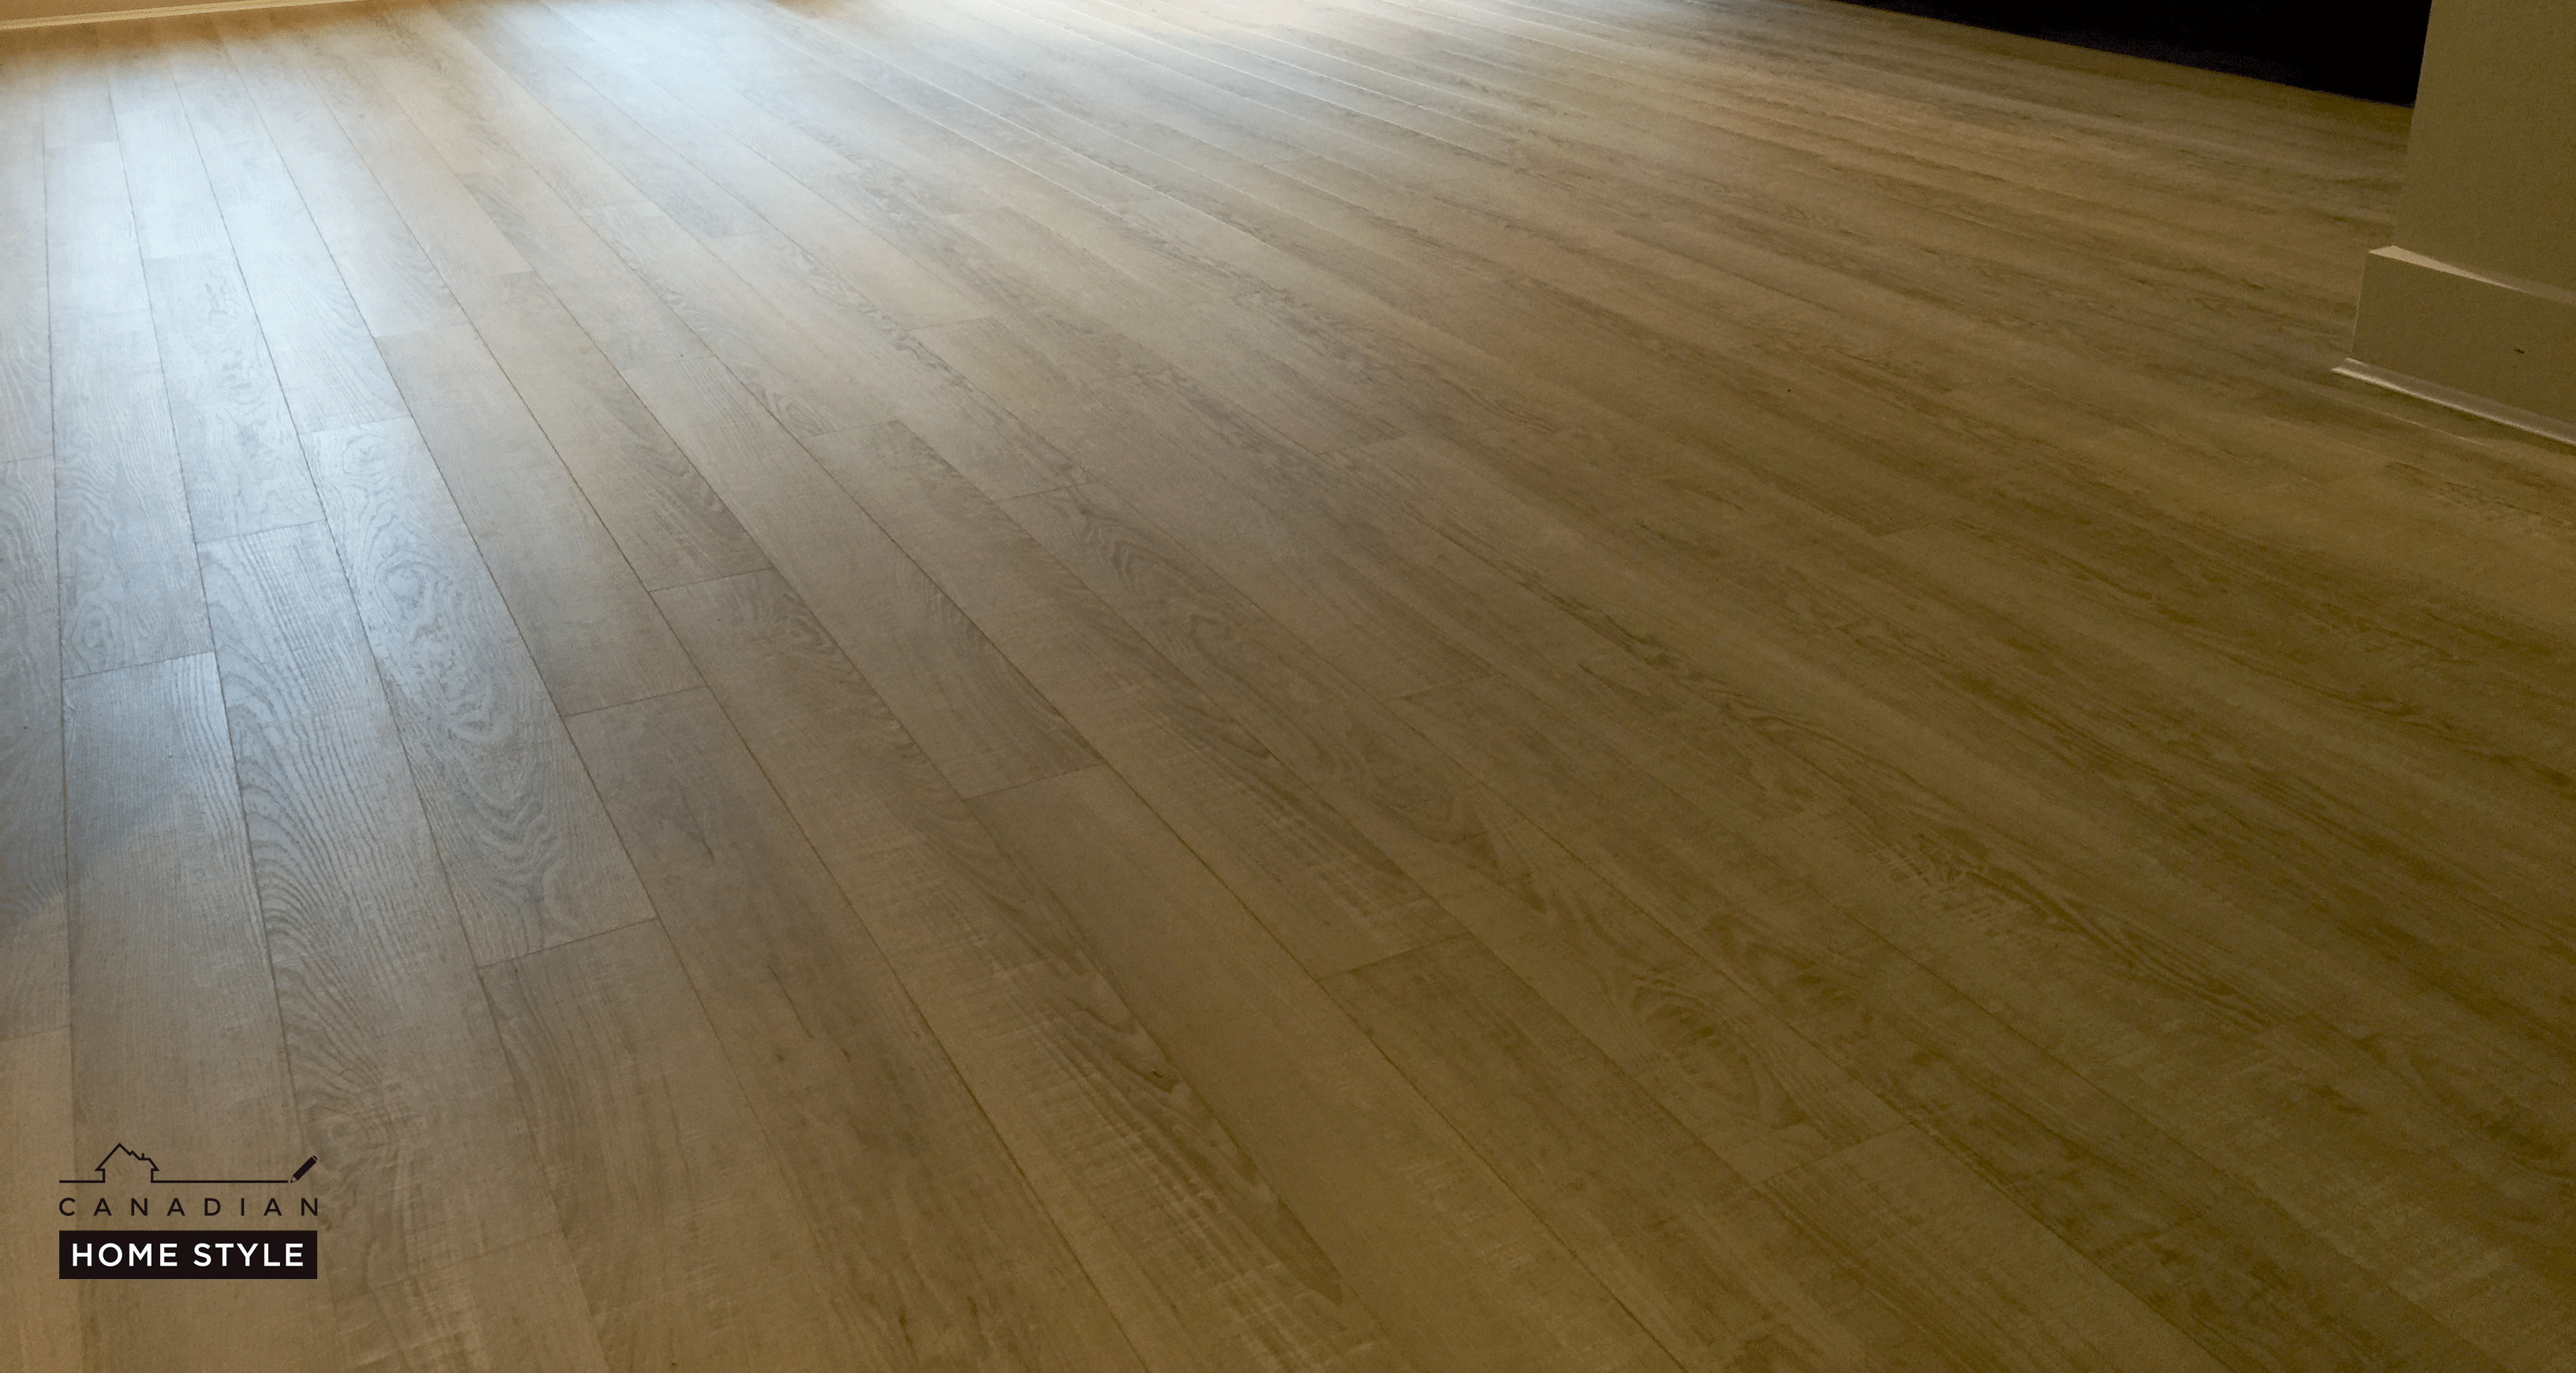 Waterproof vinyl flooring for Vancouver homes